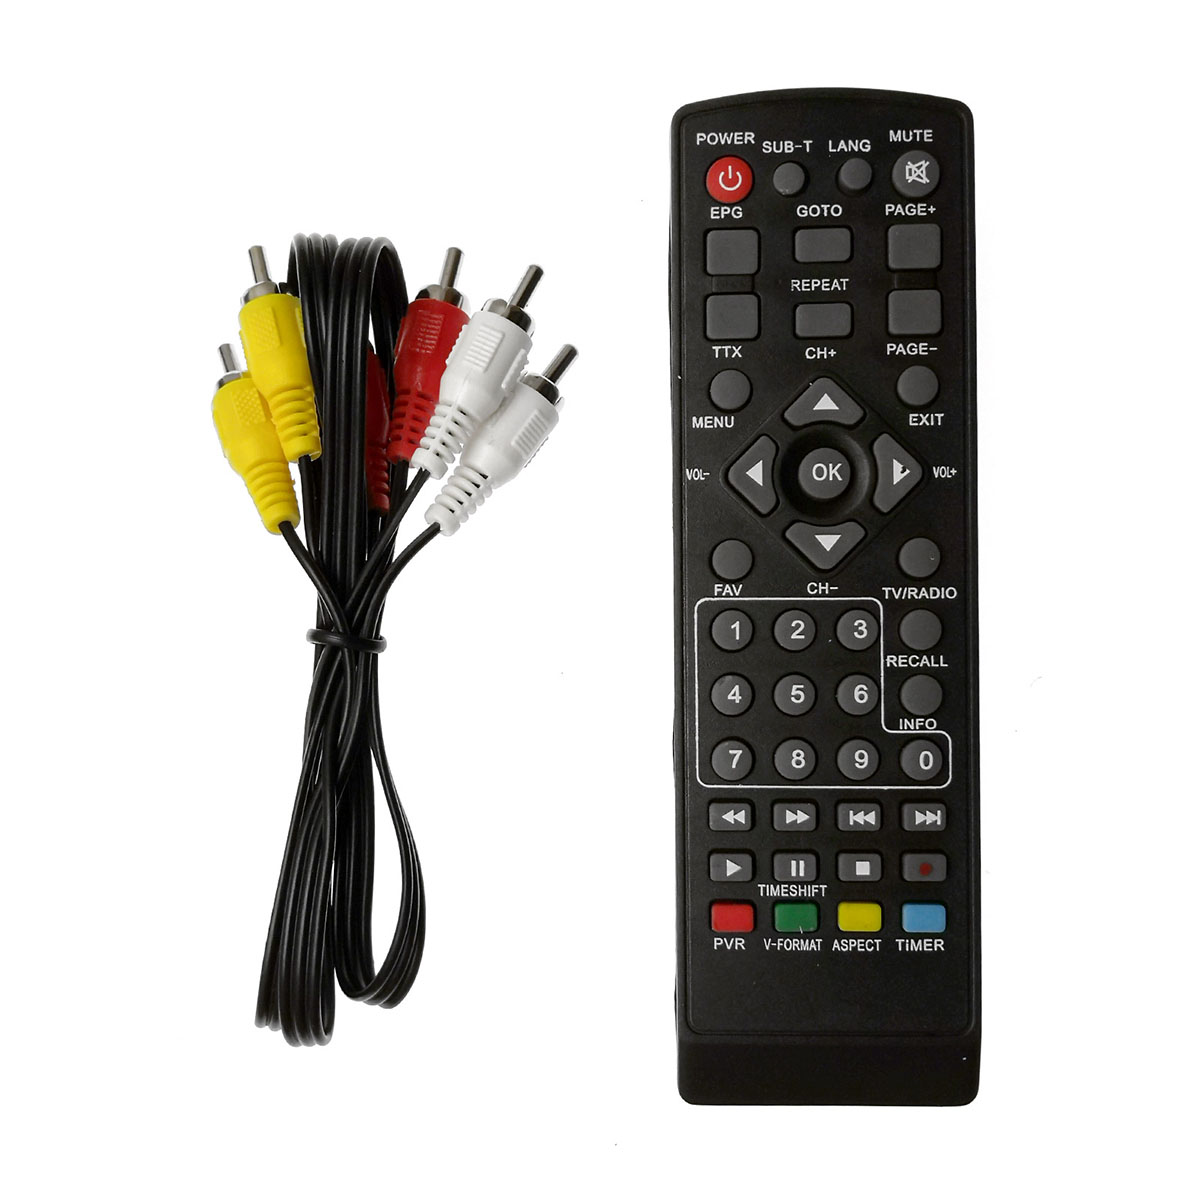 Цифровой эфирный приемник, ТВ приставка YASIN N5000 Super, DVB-T2, цвет черный